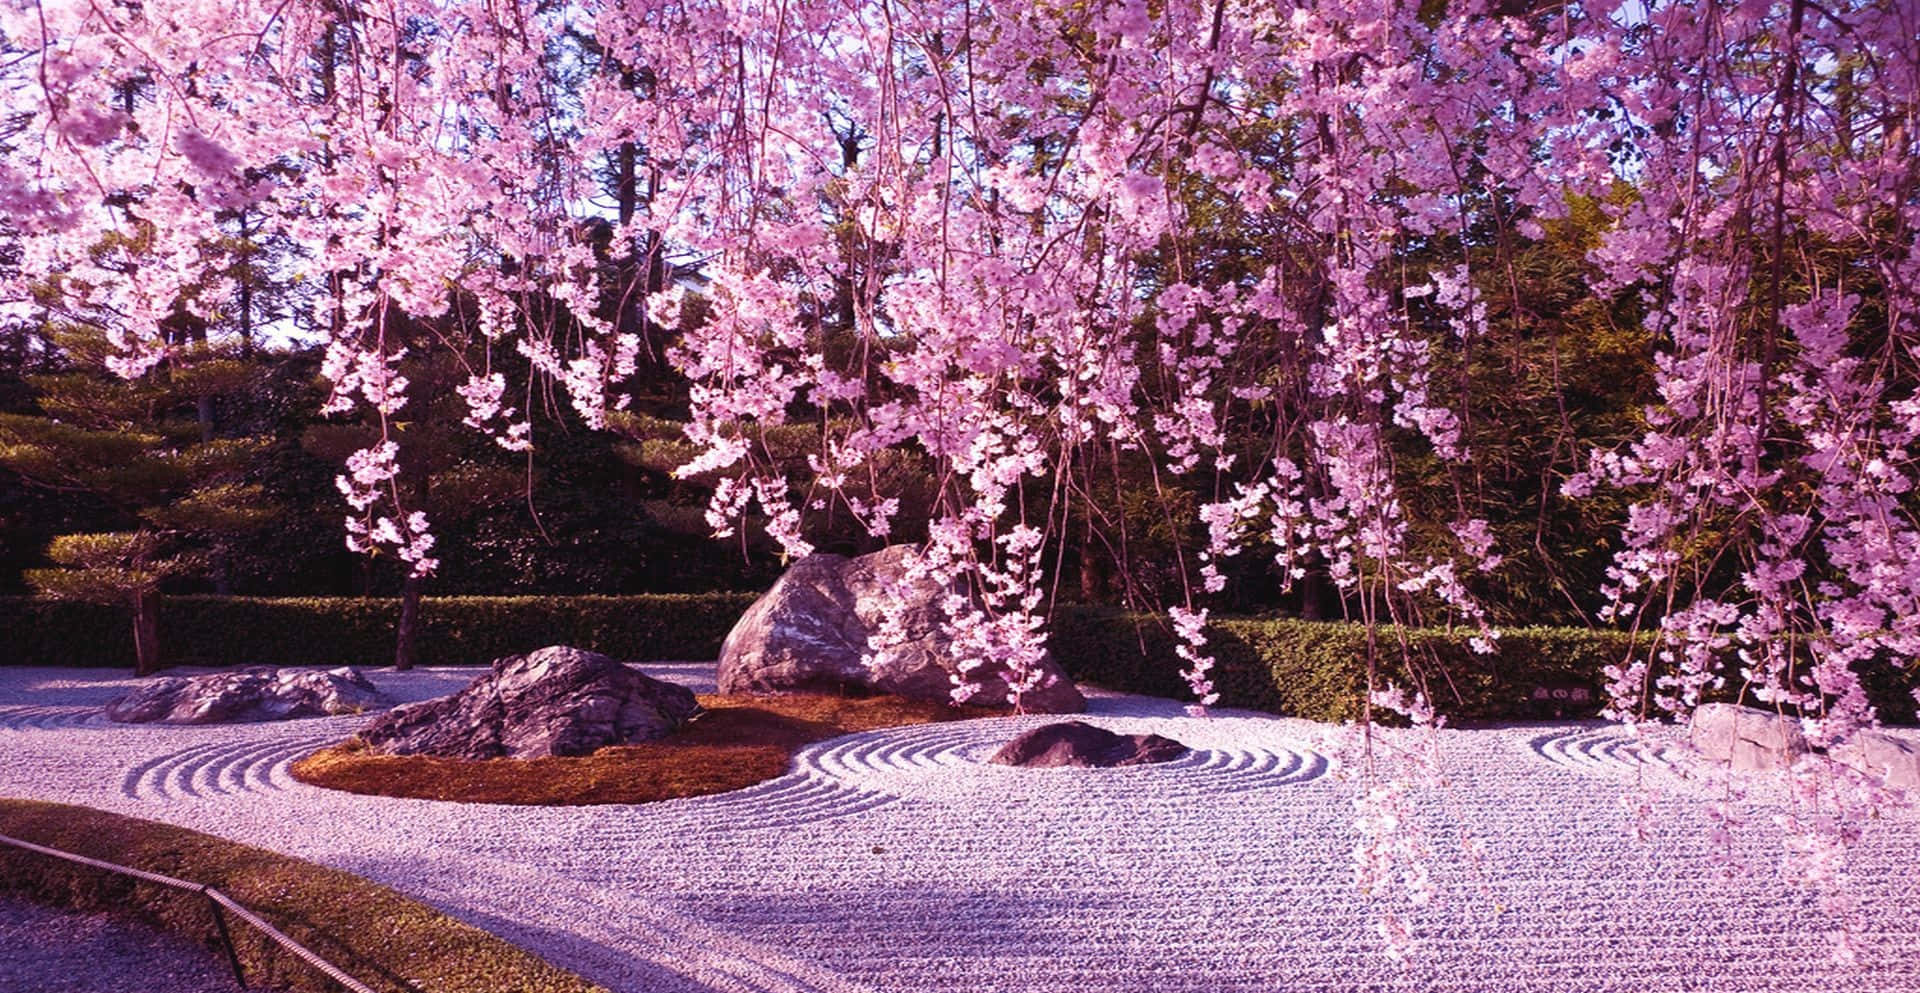 En overvældende udsigt af en Kirsebærblomstre i fuld blomstring. Wallpaper